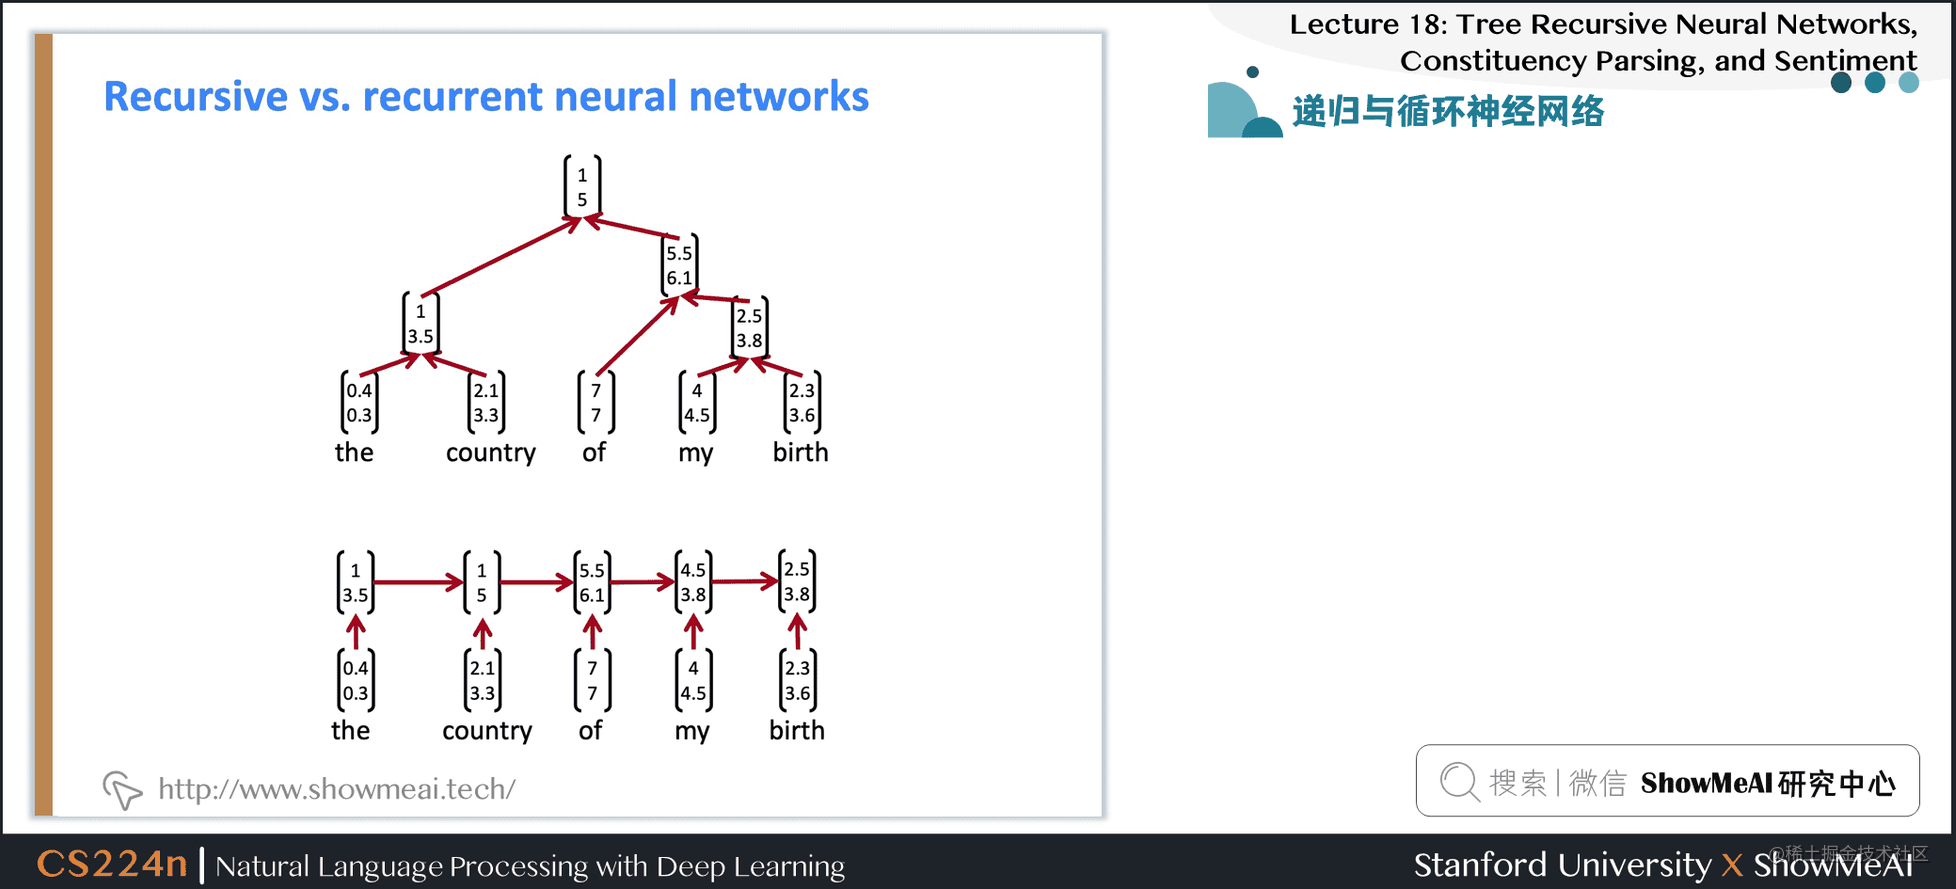 斯坦福NLP课程 | 第18讲 - 句法剖析与树形递归神经网络